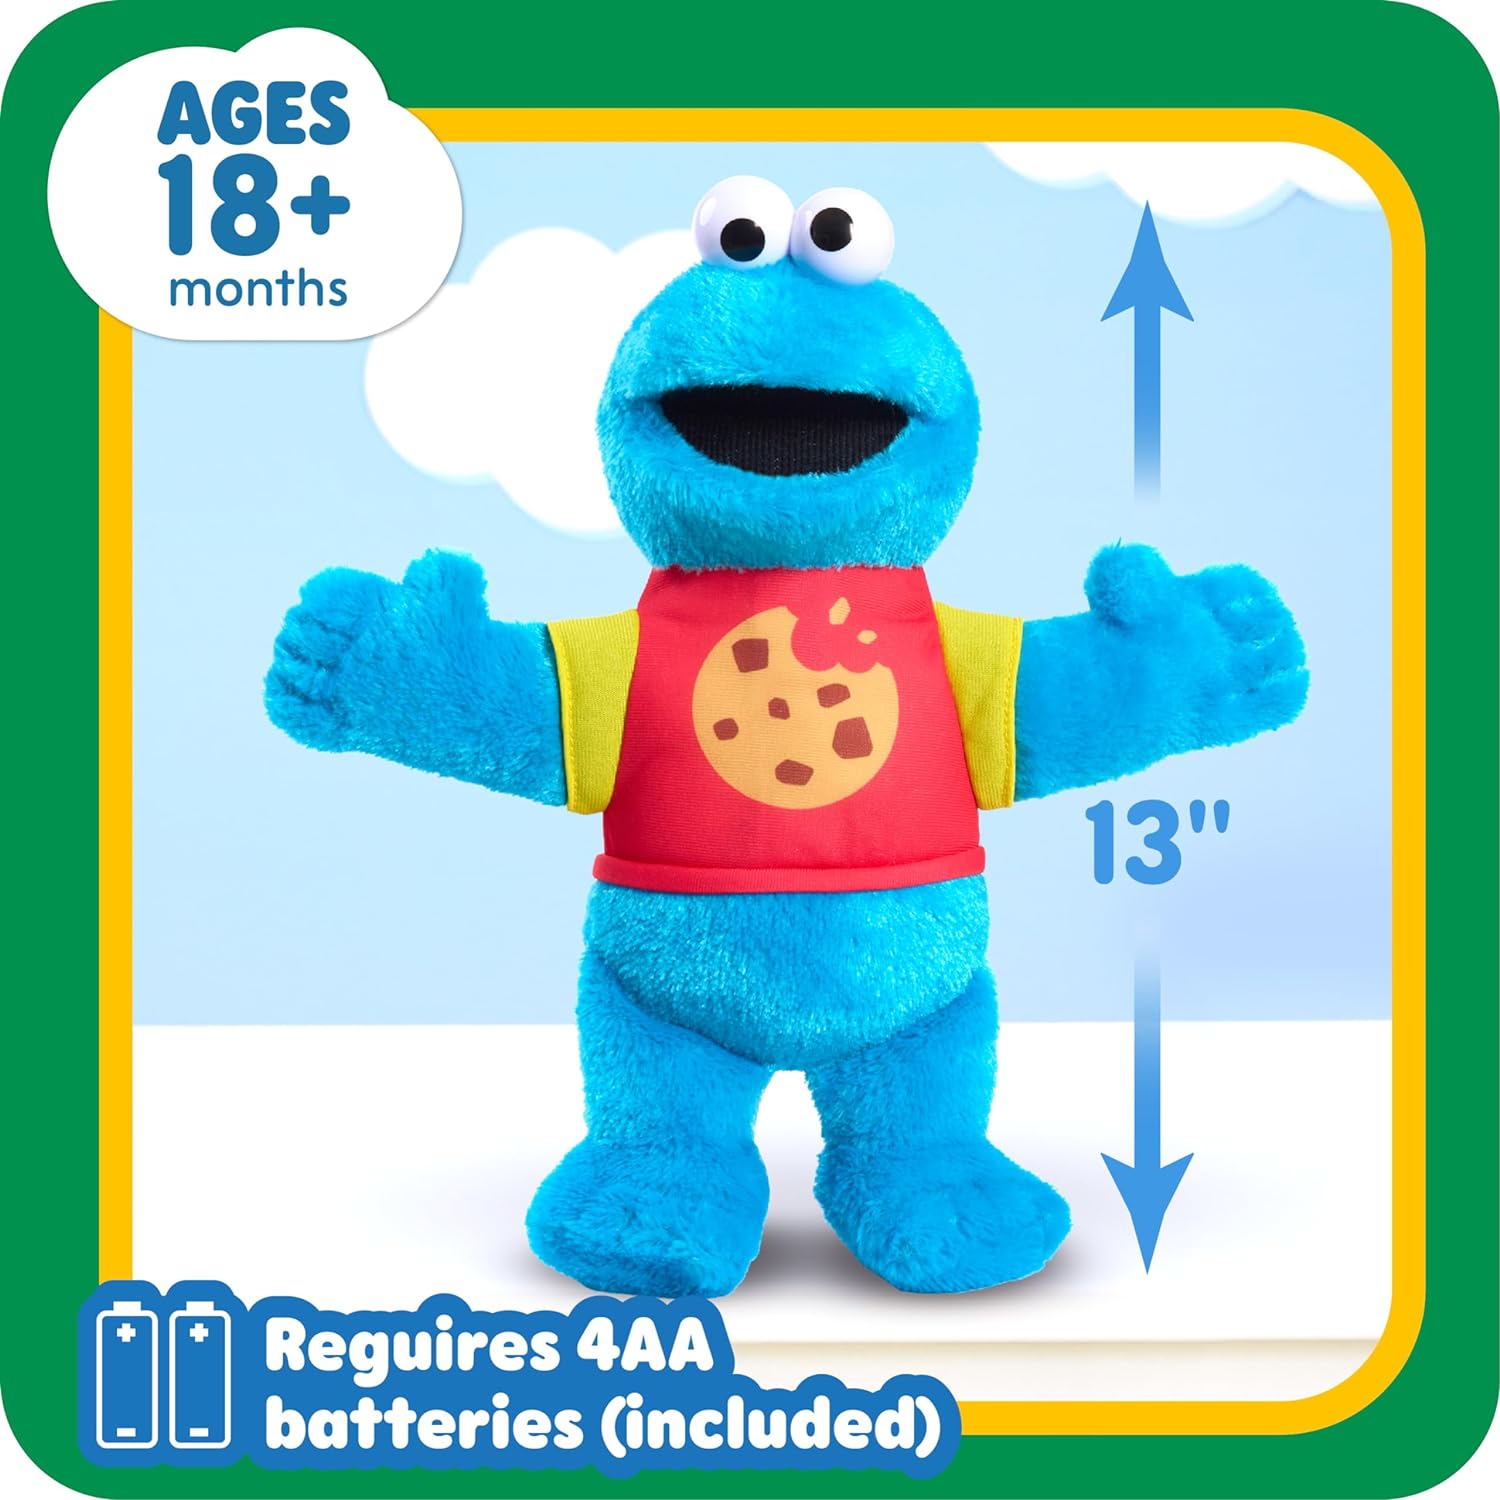 لعبة Just Play SESAME STREET Sing-Along Cookie Monster مقاس 13 بوصة من القطيفة المحشوة، حشو معاد تدويره، أزرق، ألعاب للأطفال للأعمار من 18 شهرًا